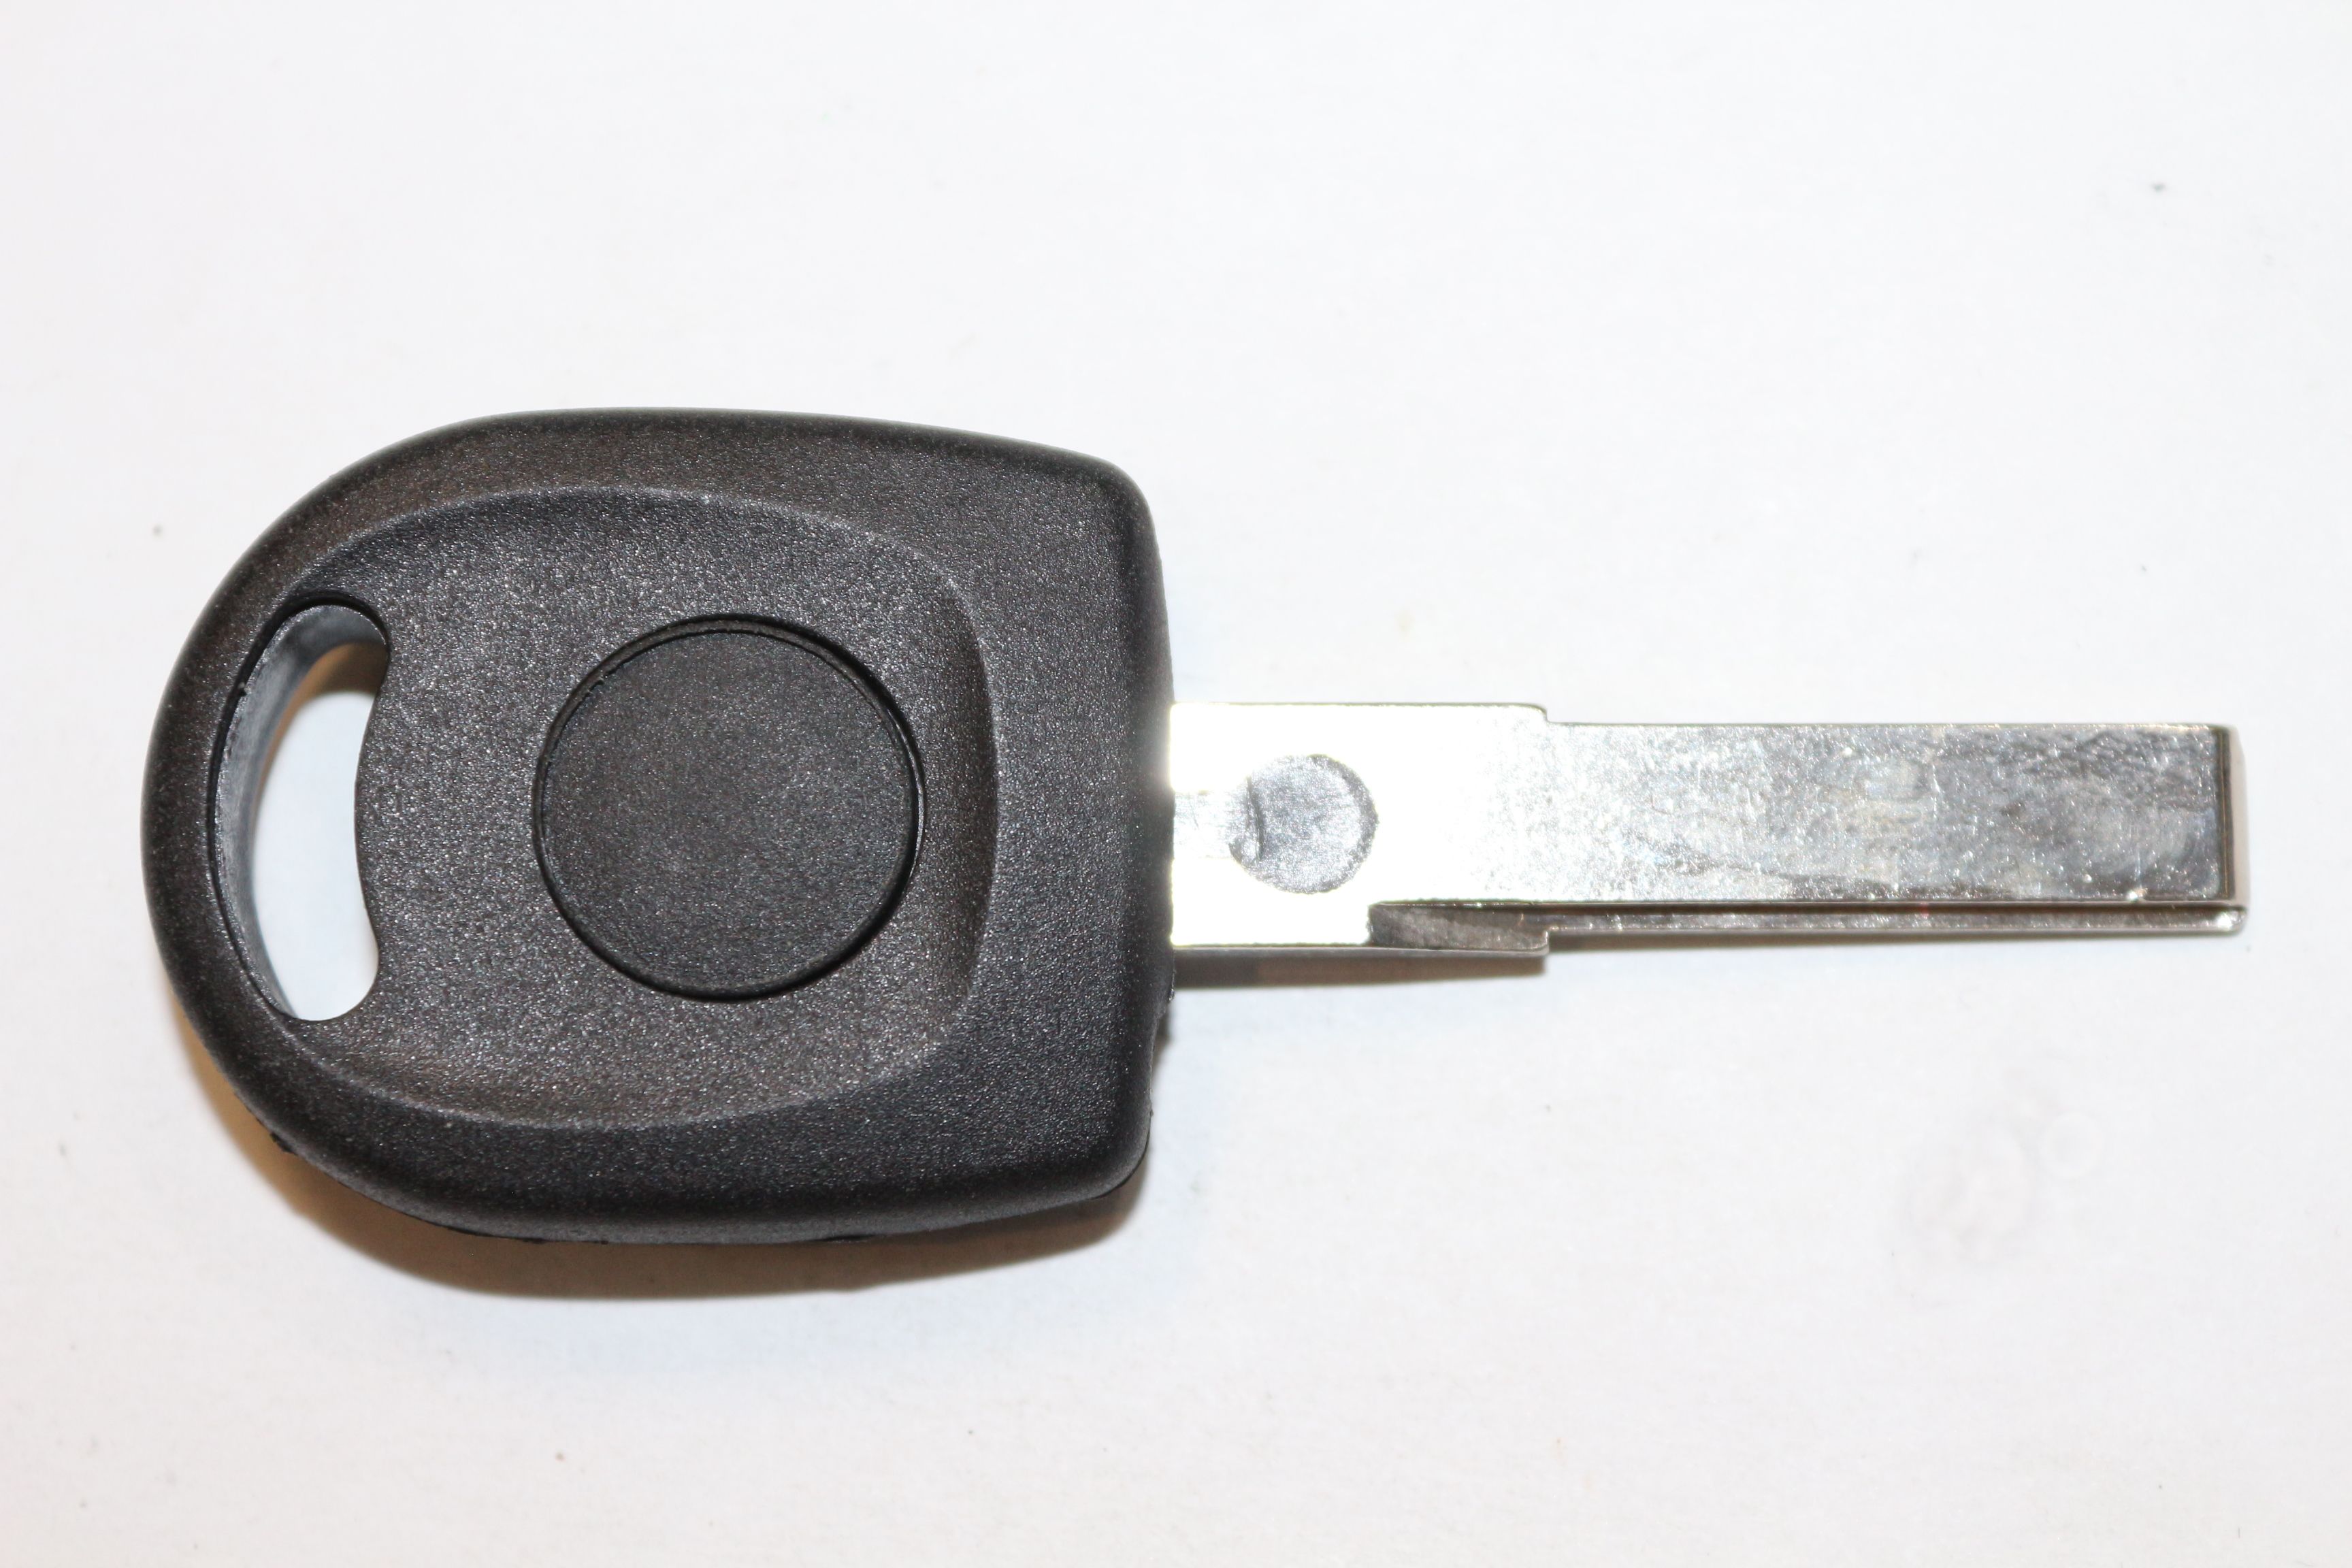 Ключ зажигания Autokey, заготовка для Skoda, с чипом ID48